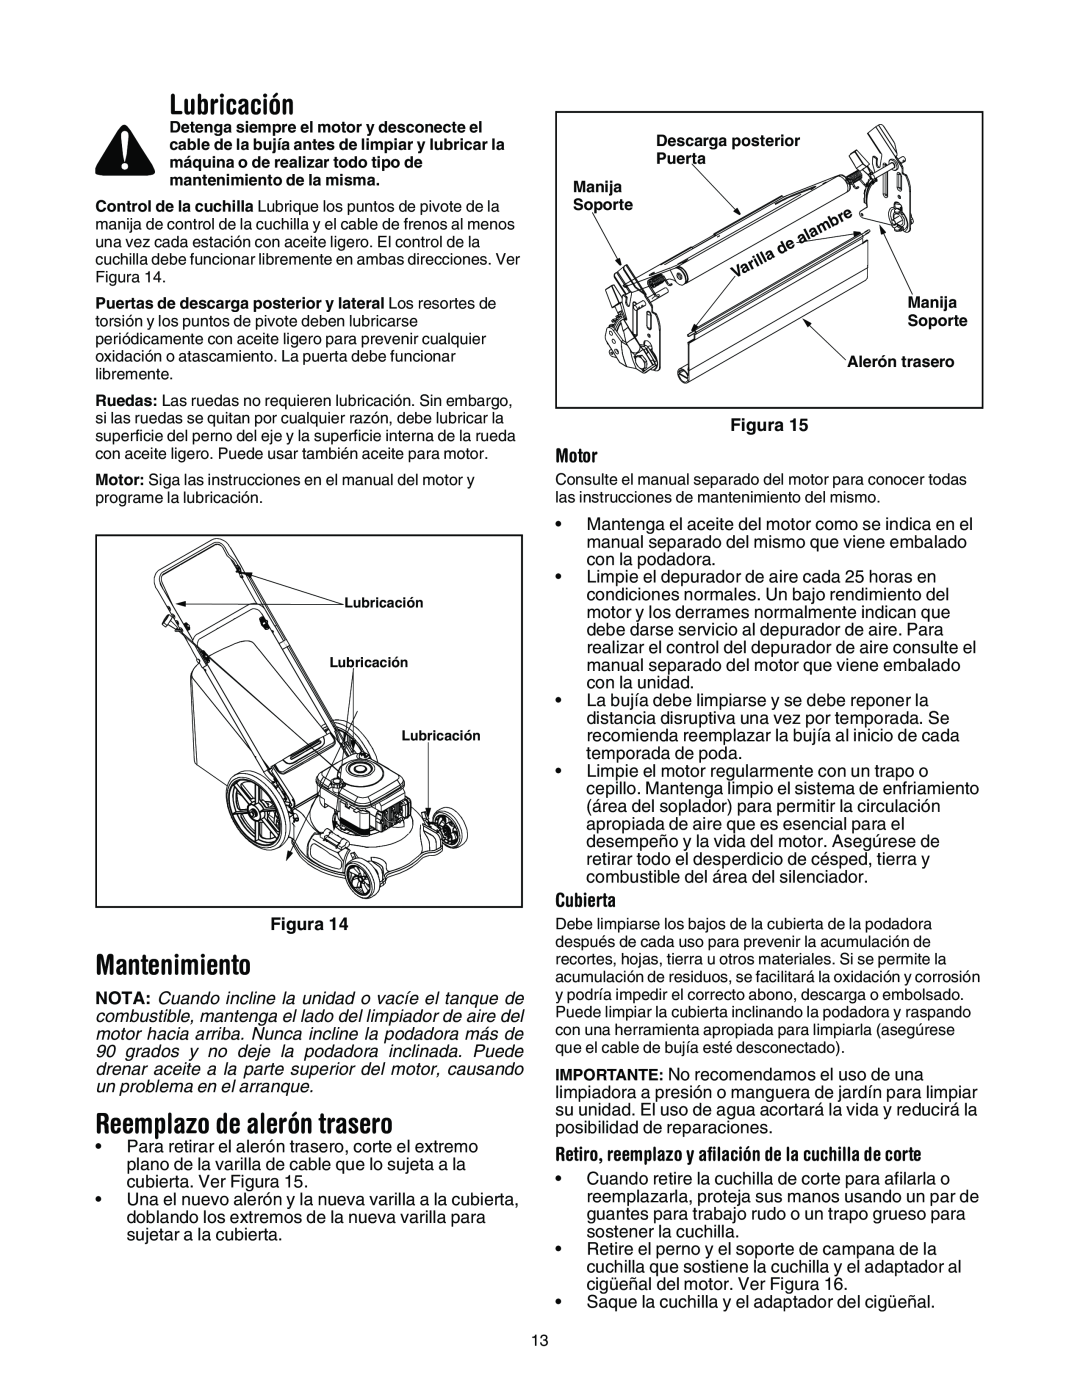 MTD 11A-545D034 manual Lubricación, Mantenimiento, Reemplazo de alerón trasero, Motor, Cubierta 